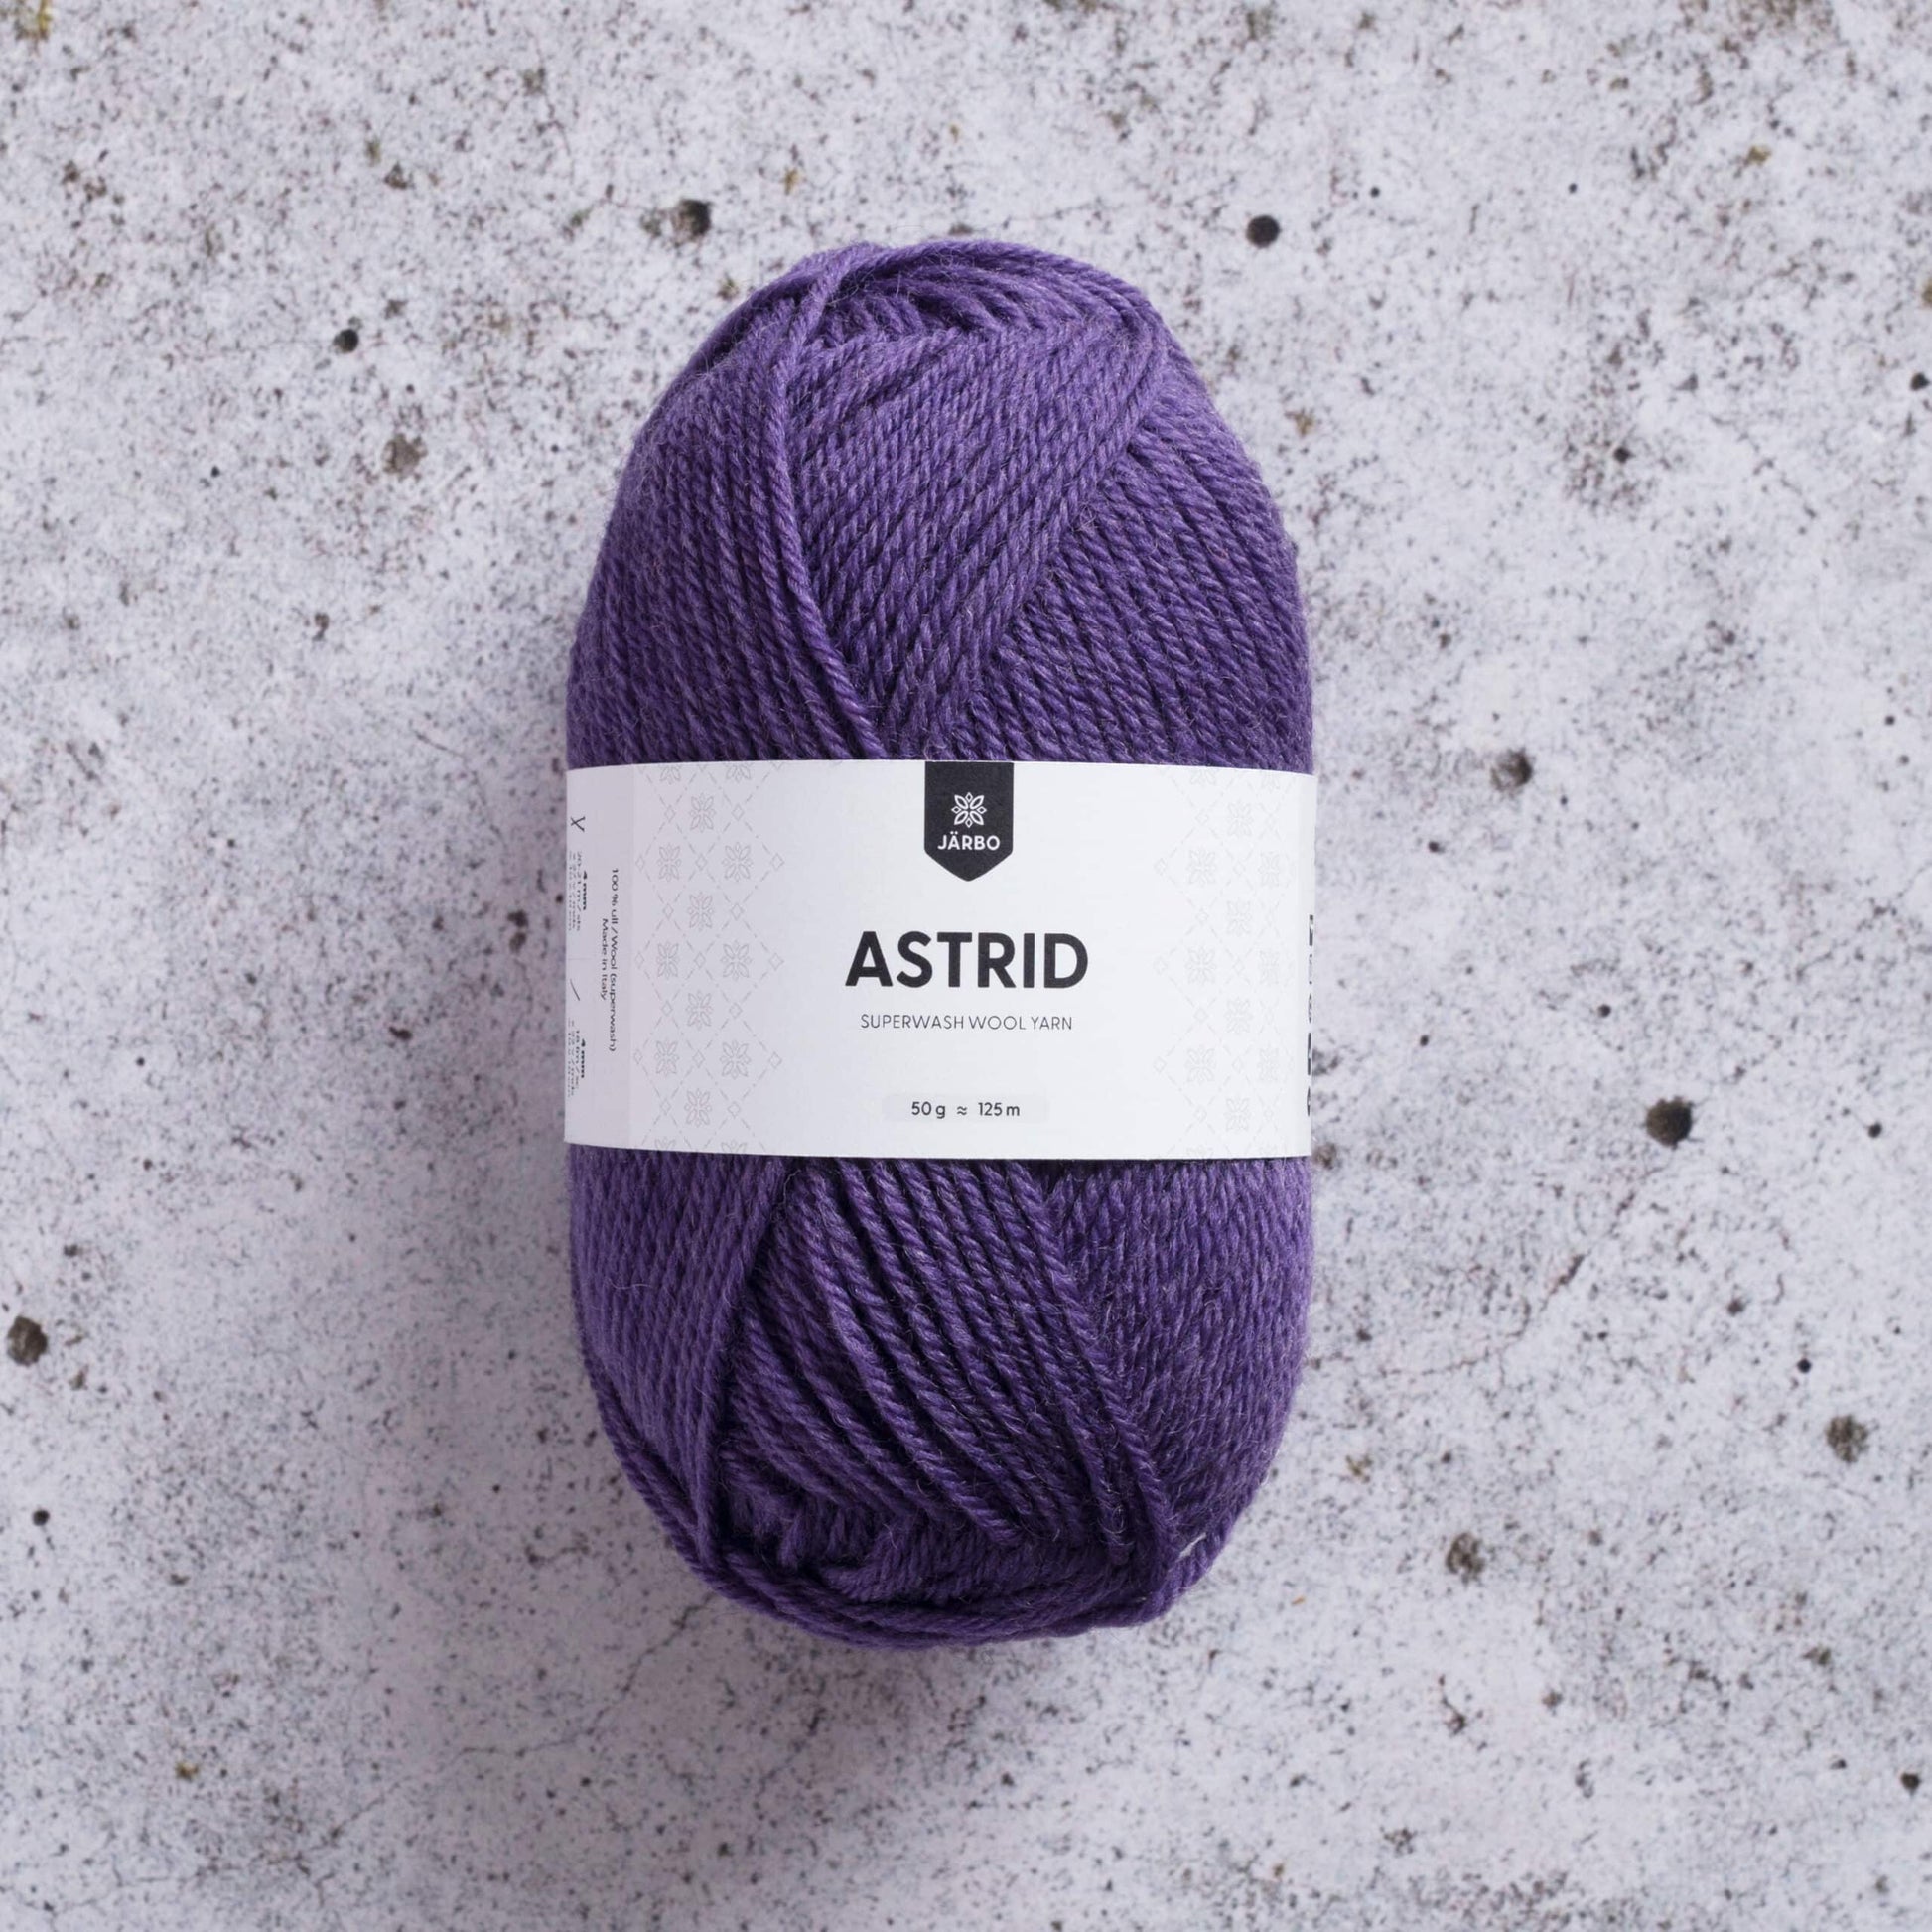 Järbo Astrid - 433 Pale plum